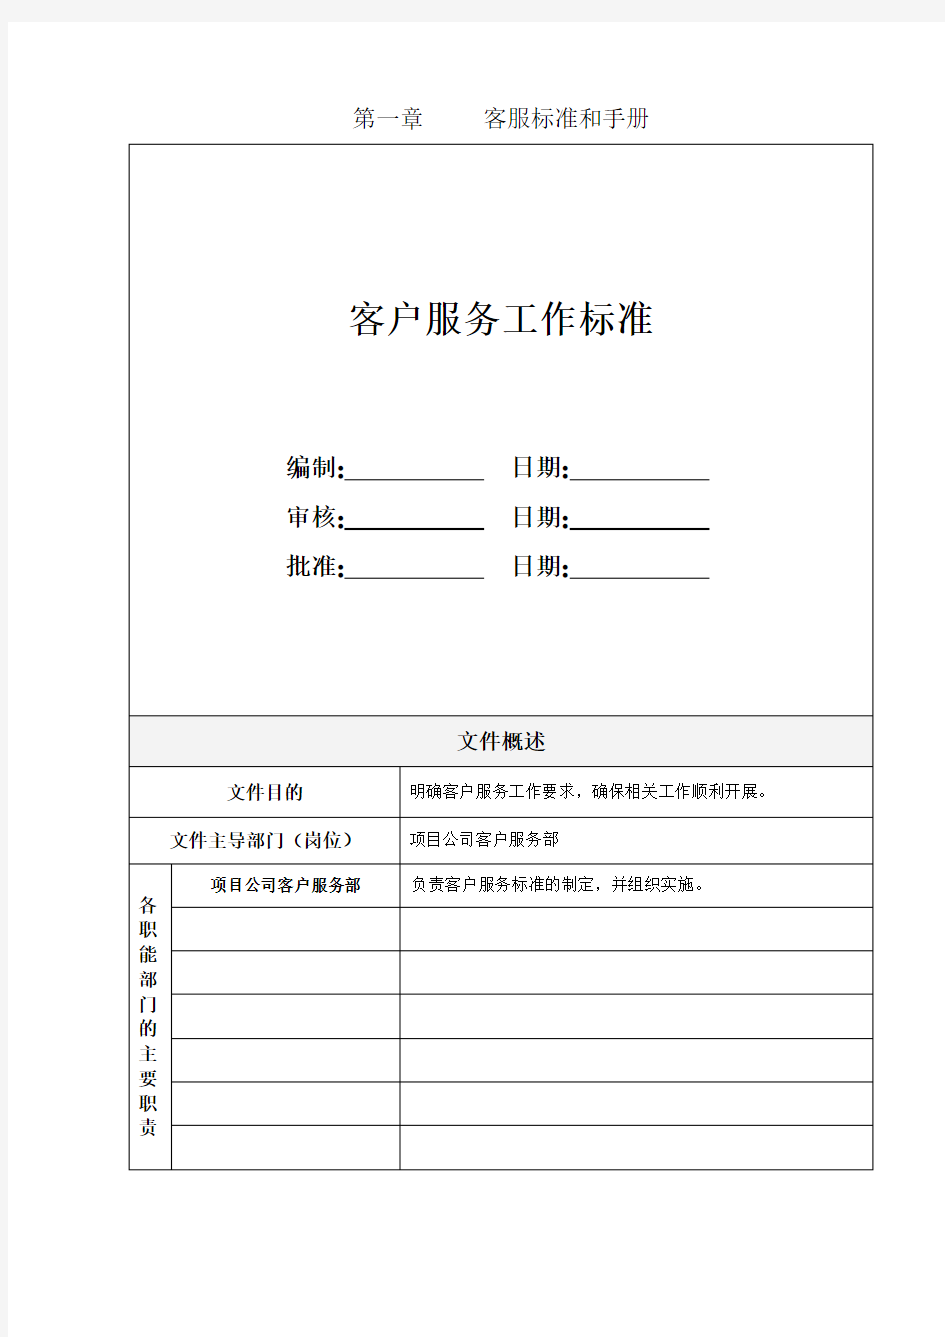 企业管理手册-中南物业管理服务标准指引手册 精品